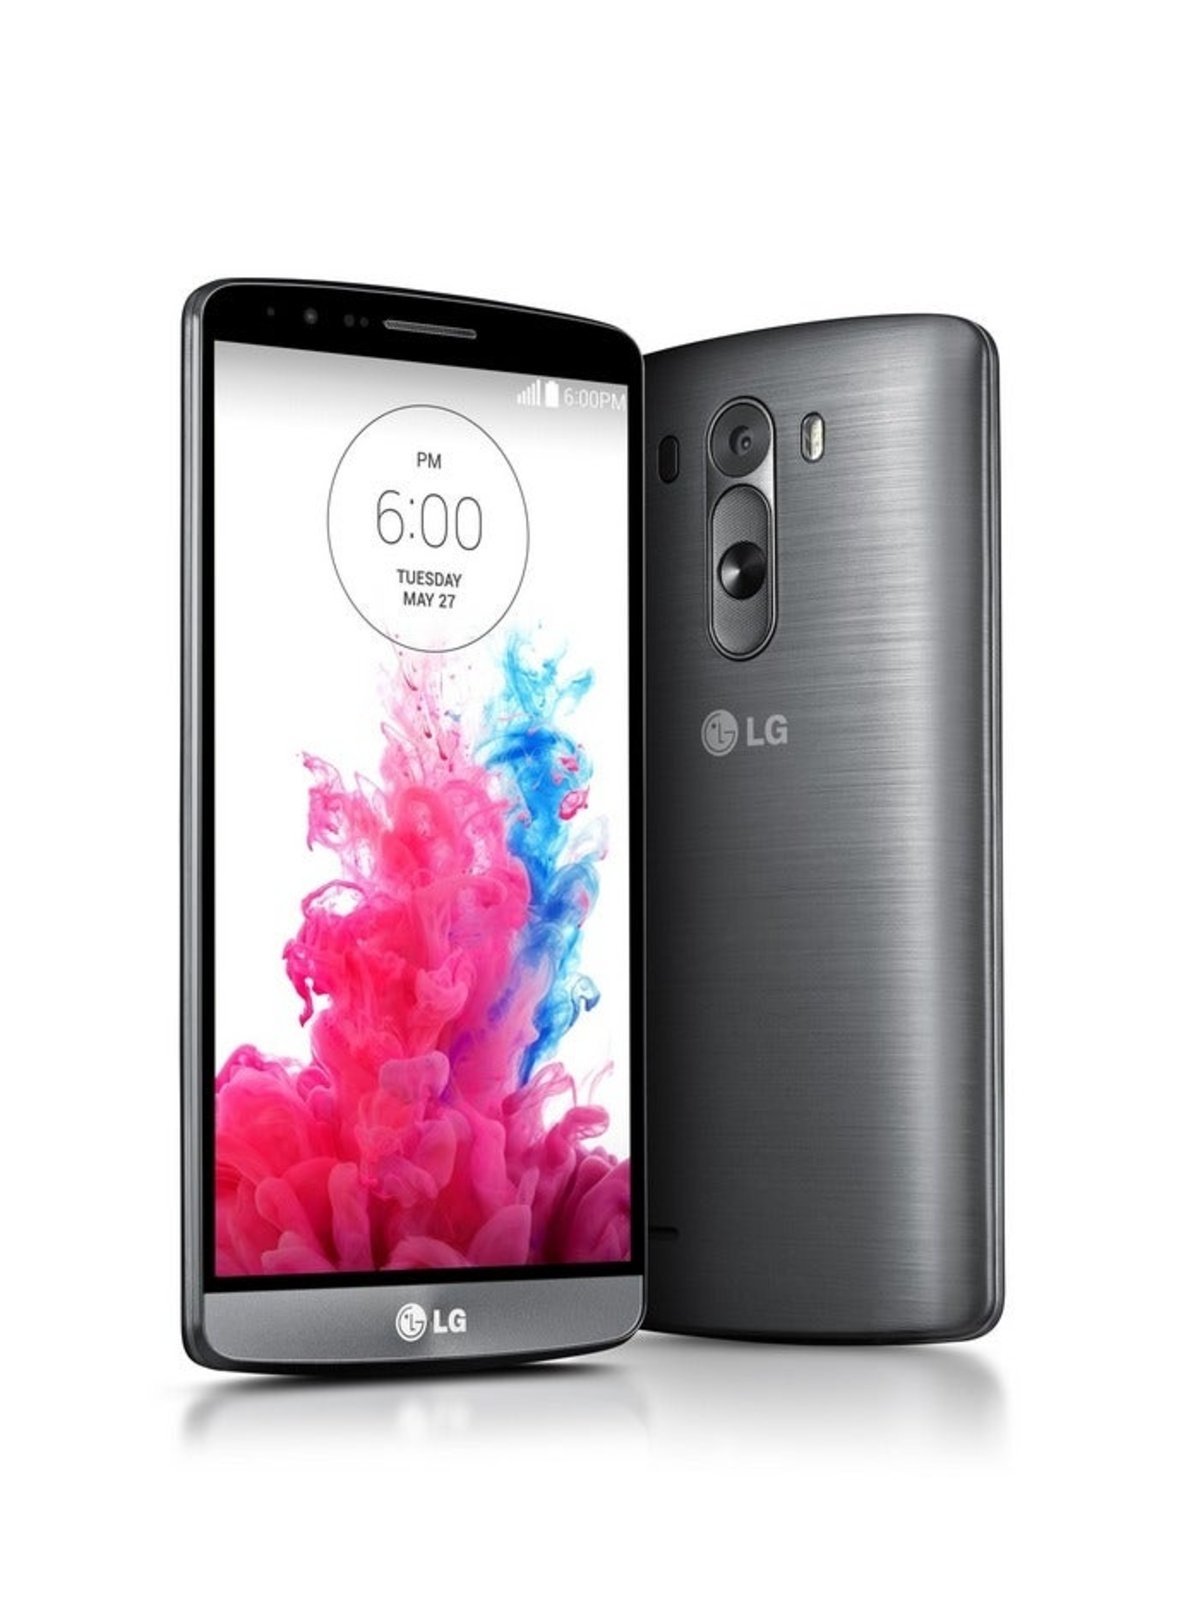 Imagen del LG G3